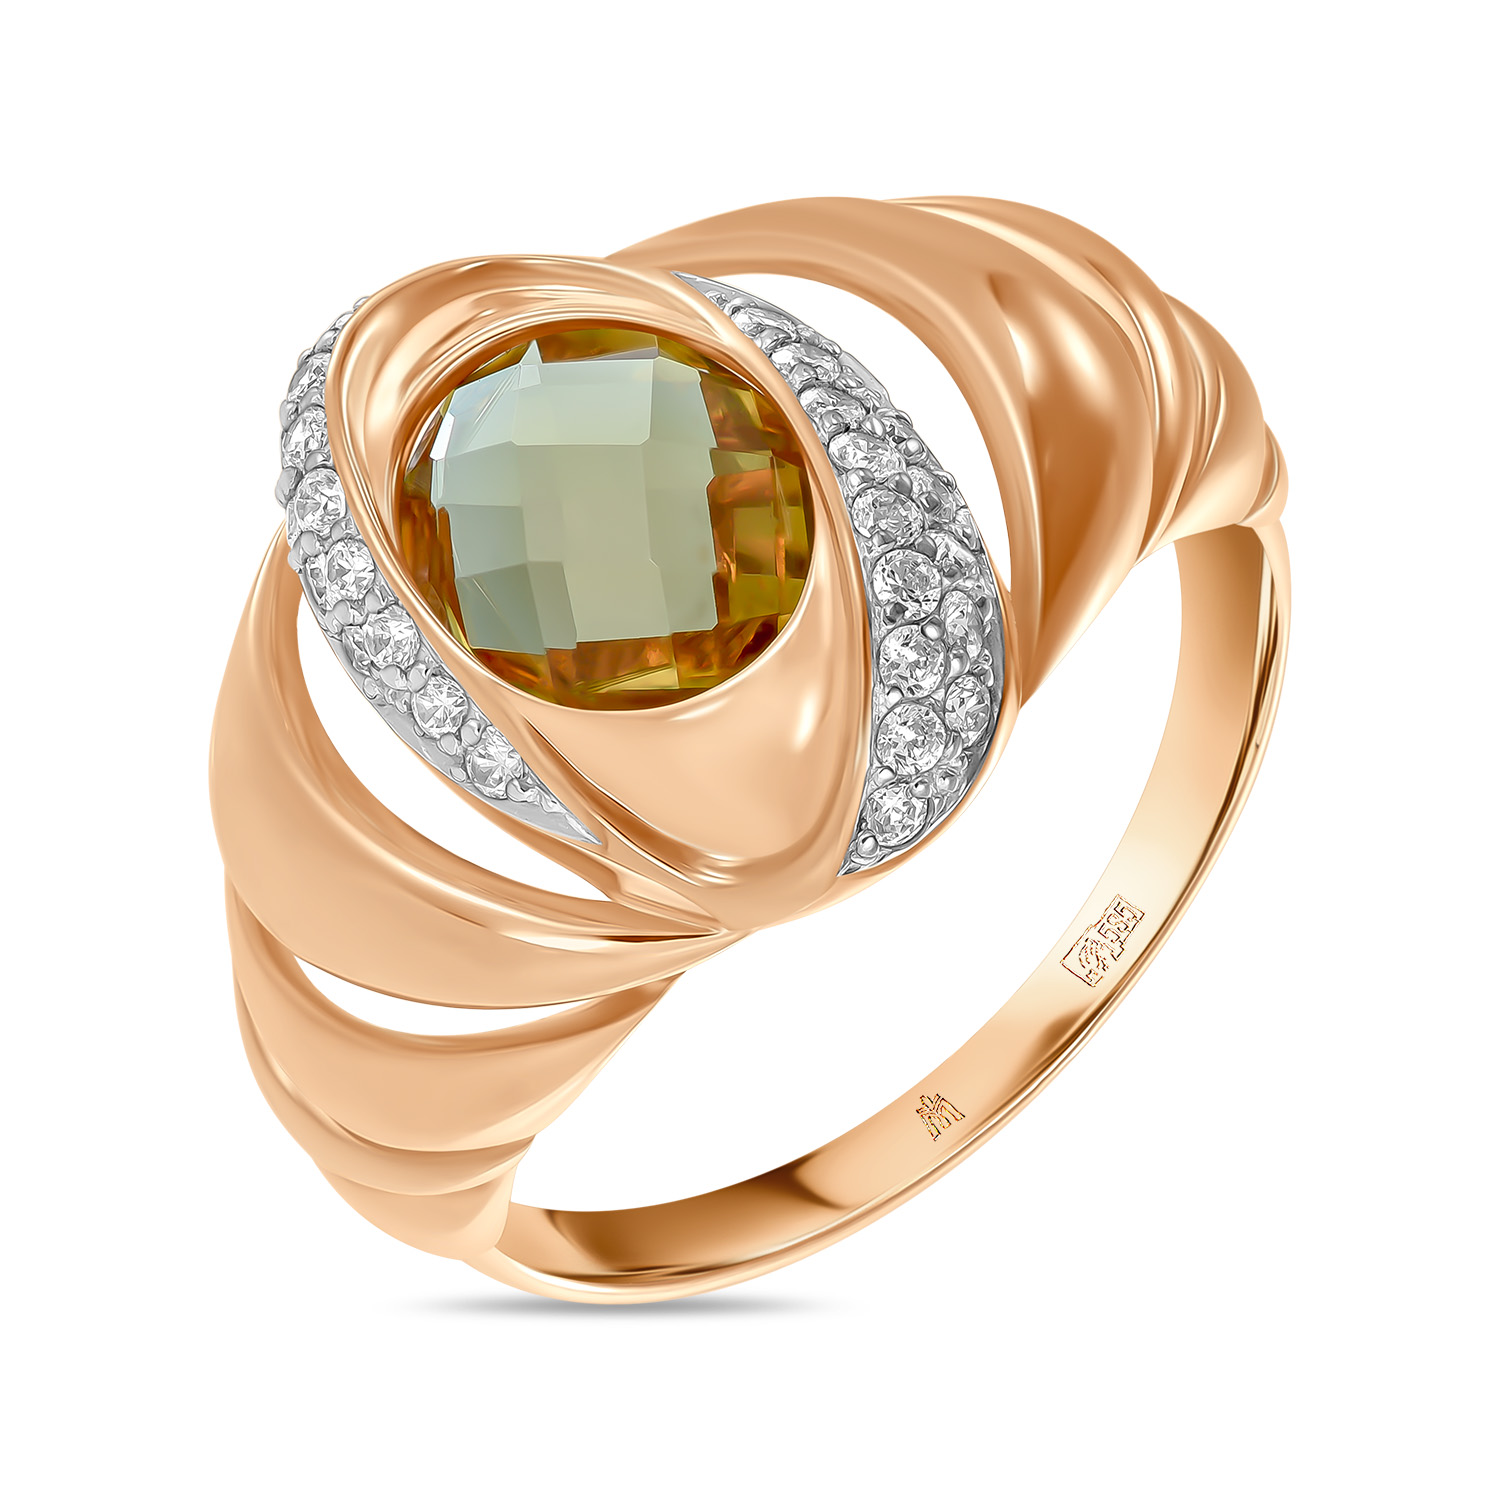 Кольца МЮЗ Золотое кольцо с наноситал султанитом и фианитами серебряное кольцо леди с султанитом и фианитами